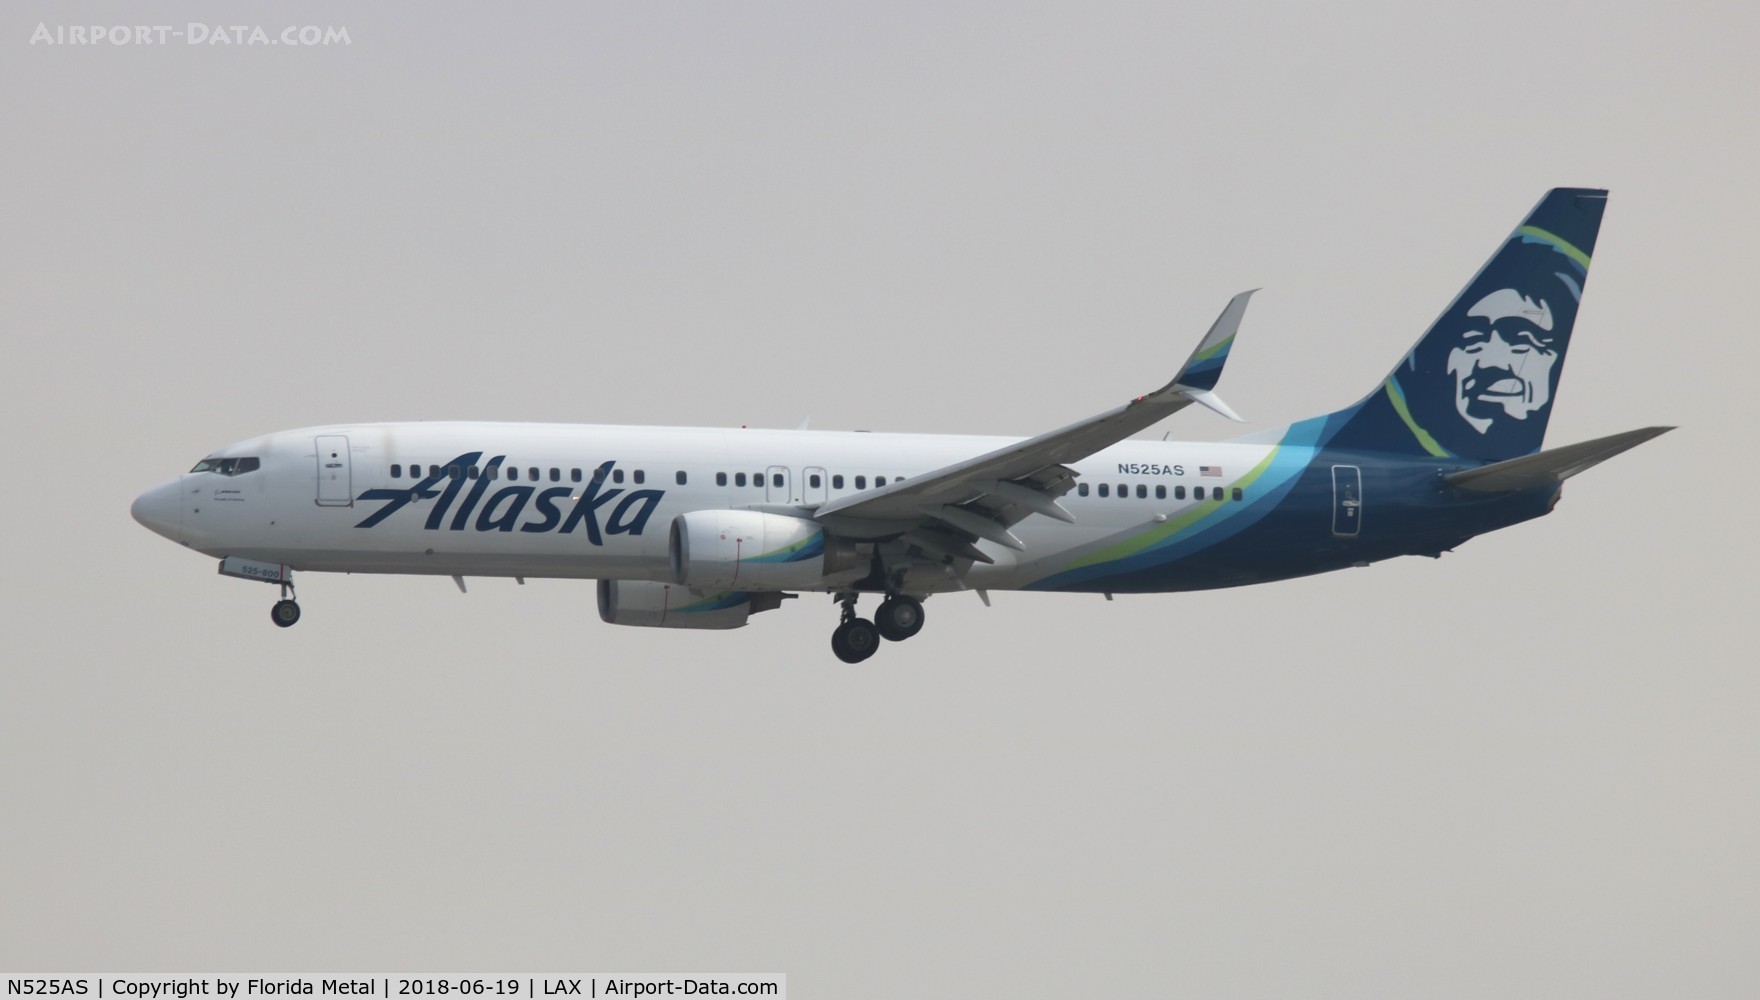 N525AS, 2009 Boeing 737-890 C/N 35692, Alaska